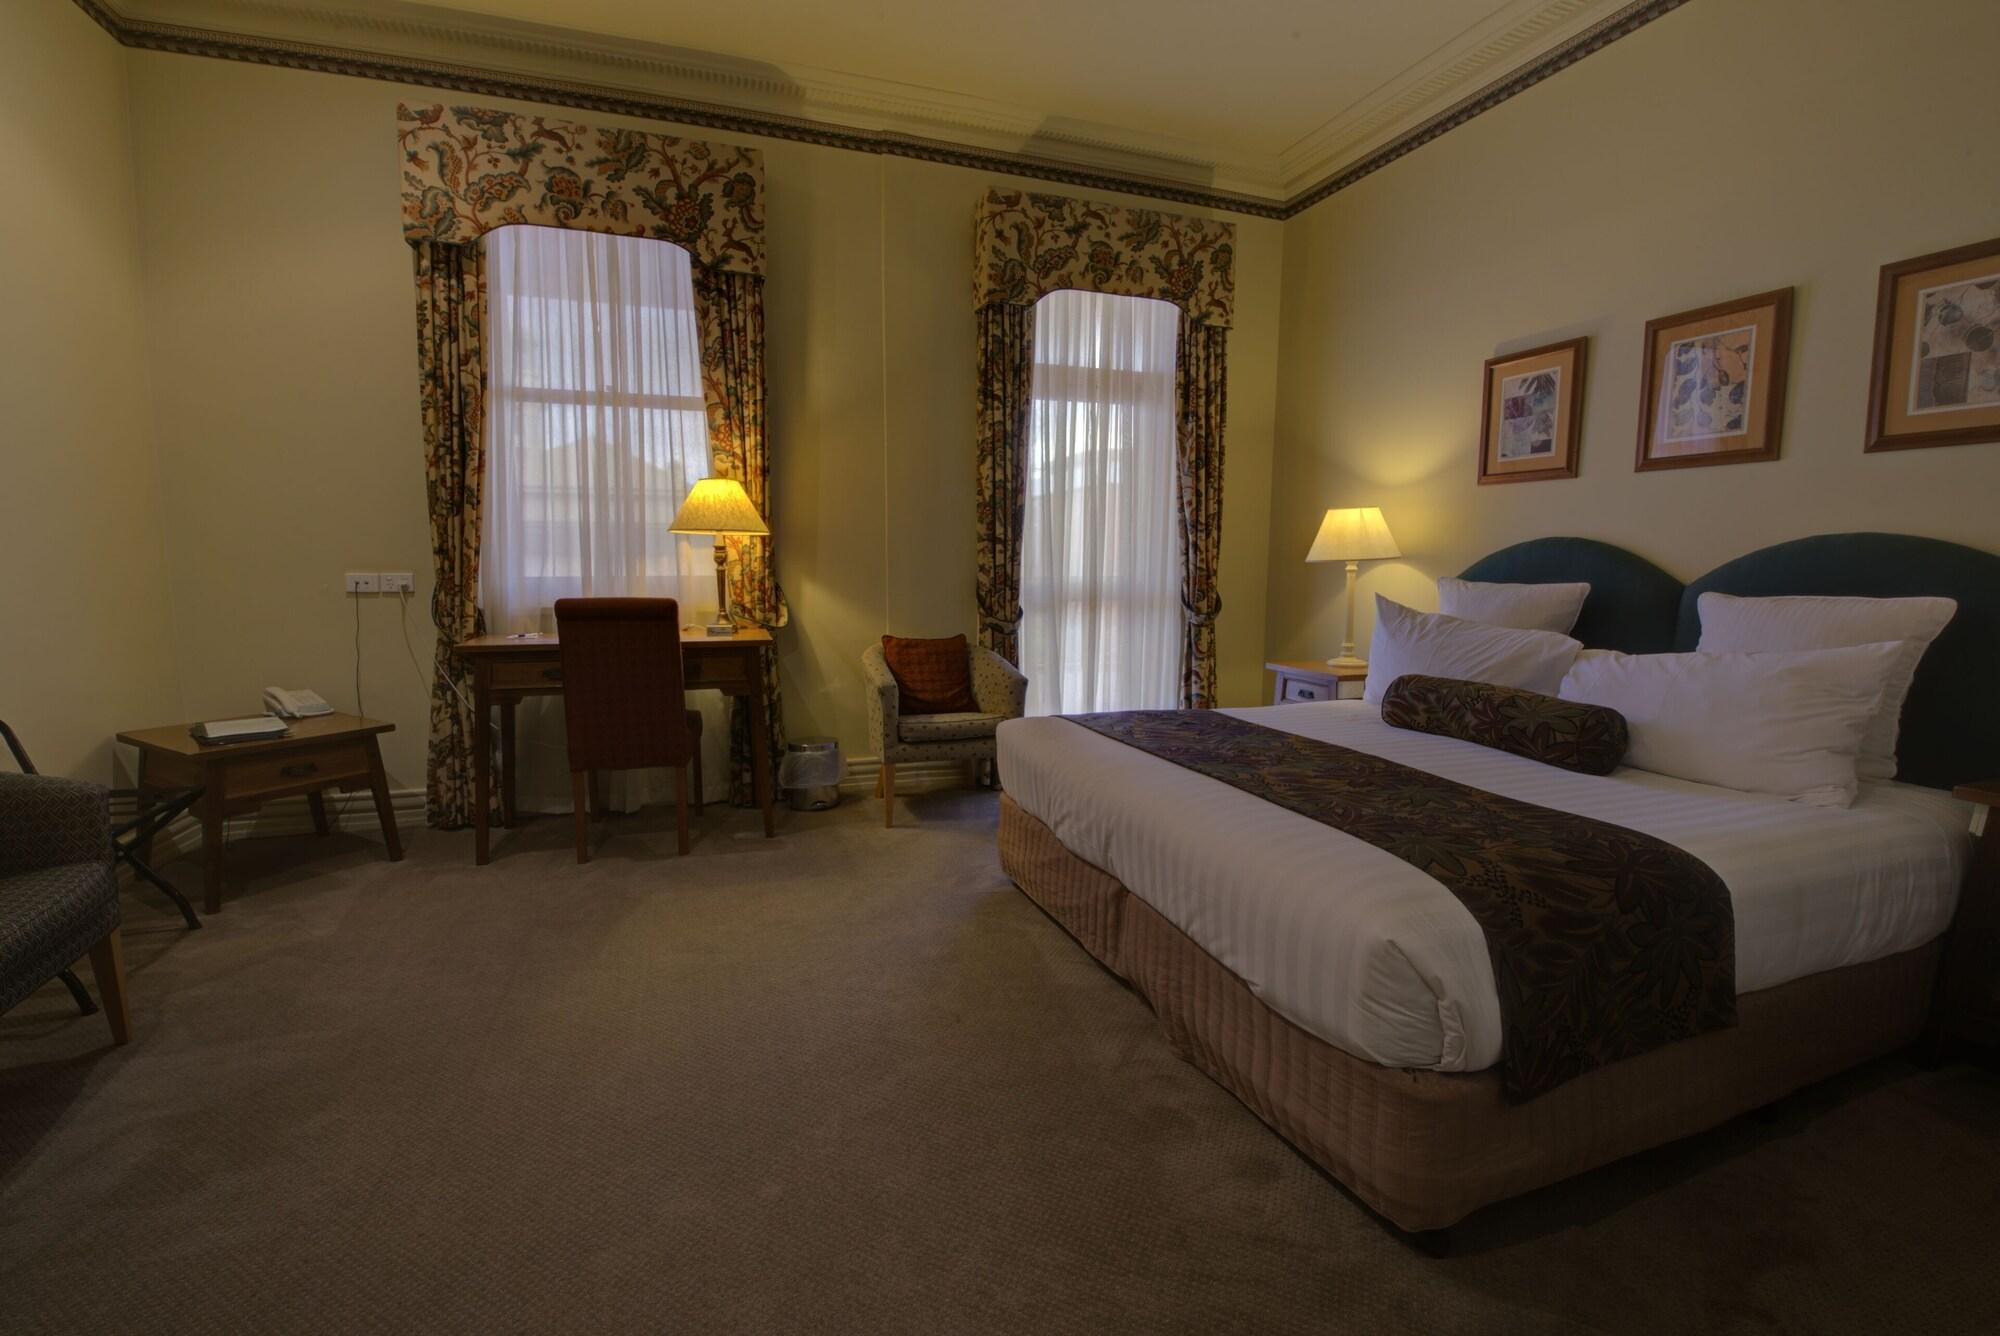 Royal Exchange Hotel Брокен-Хилл Экстерьер фото